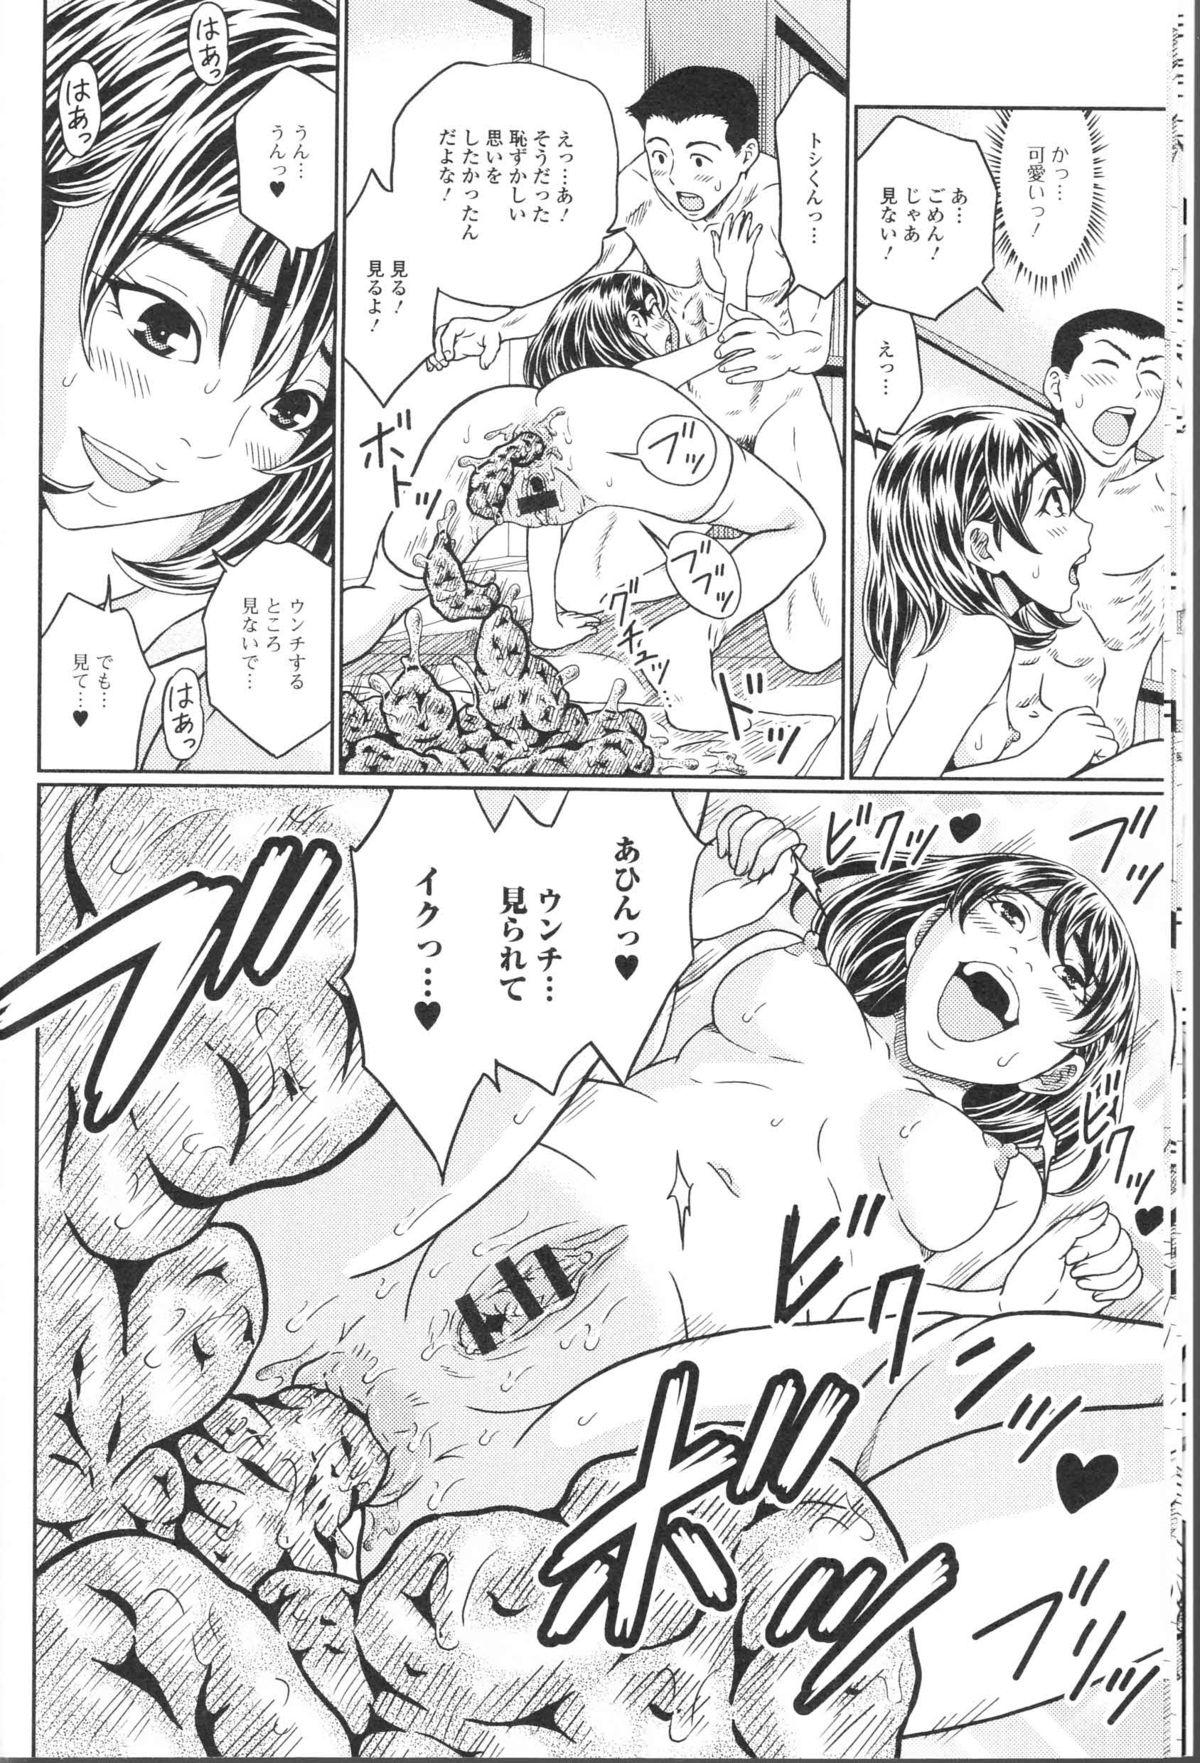 Bare Nozoite wa Ikenai NEO! II - Do Not Peep NEO! II Euro Porn - Page 12